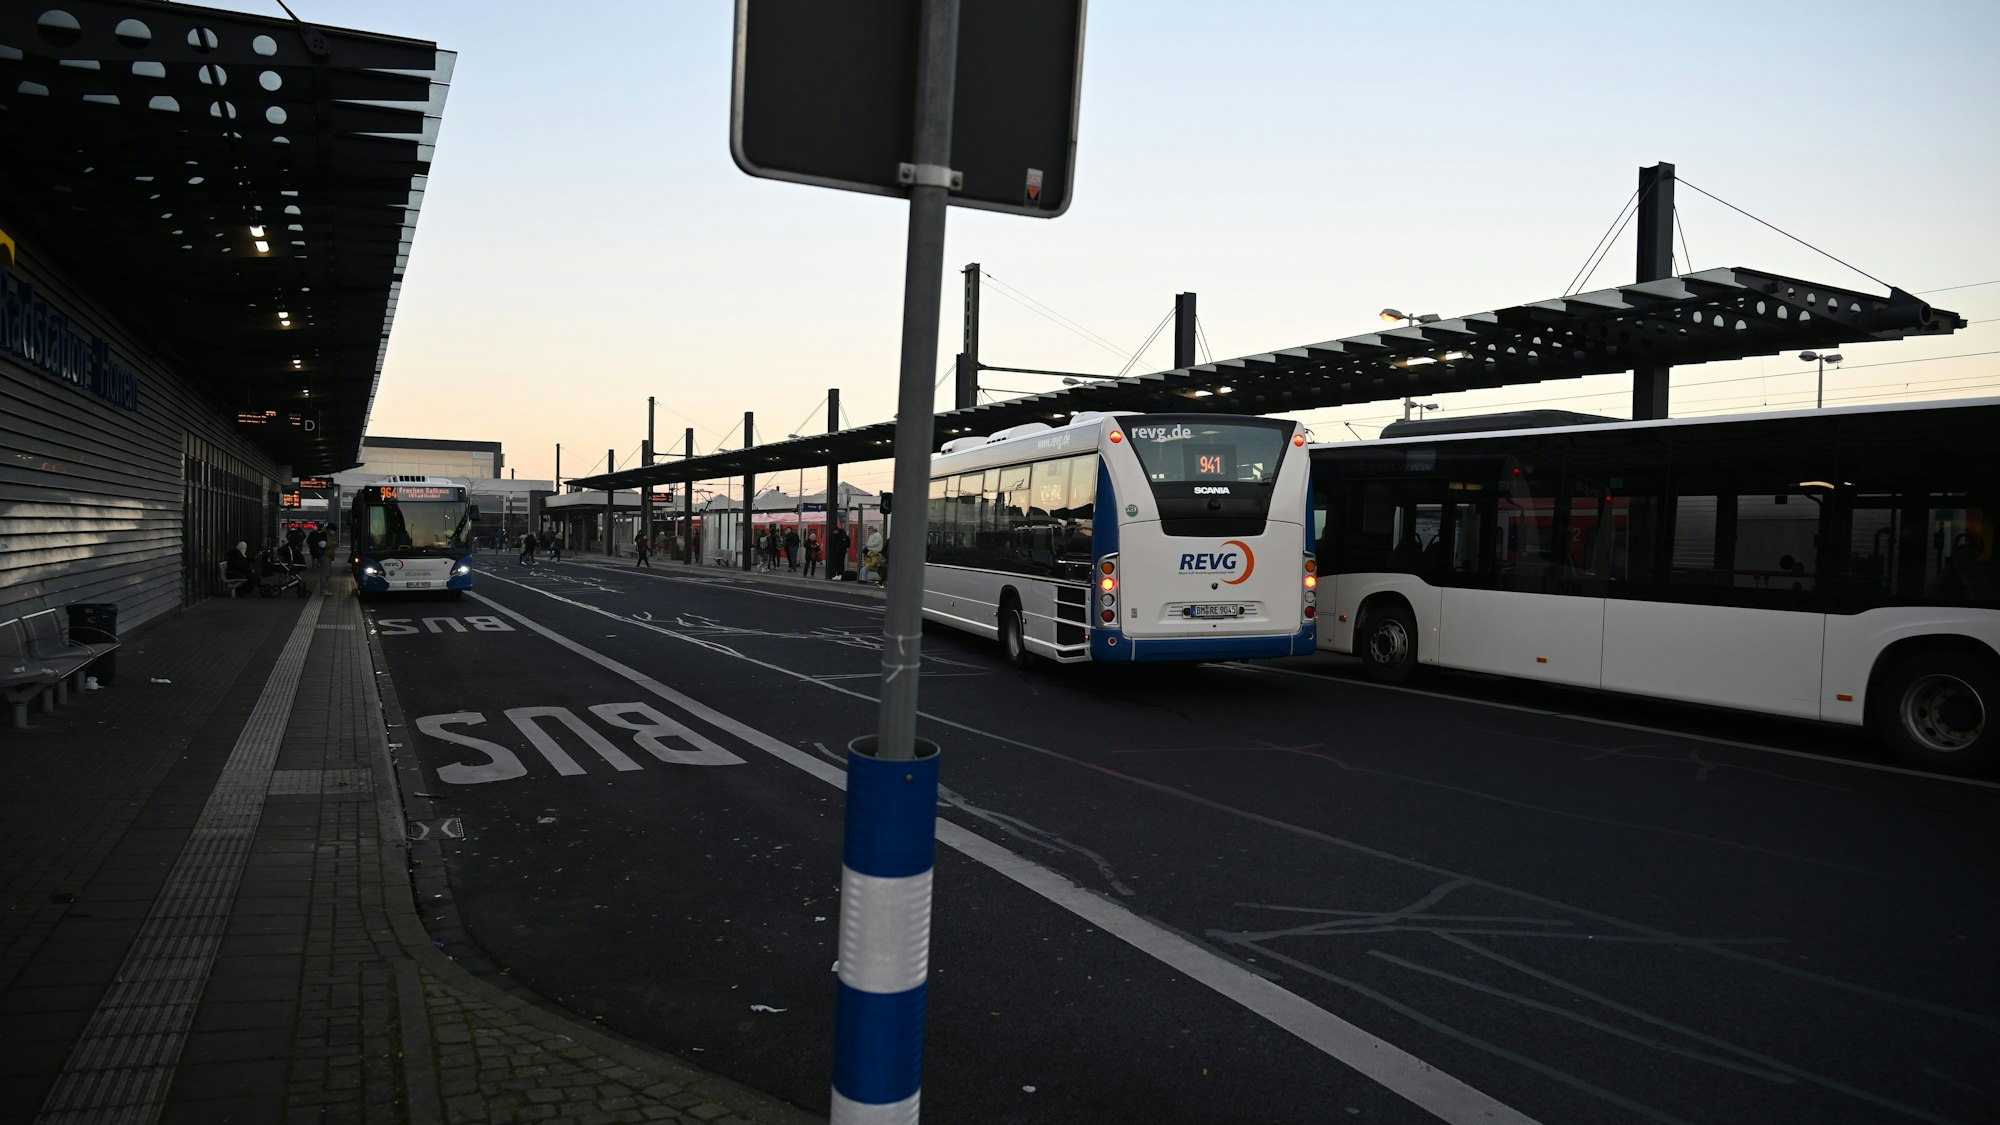 Auf dem Foto ist ein Busbahnhof mit mehreren REVG-Bussen zu sehen.